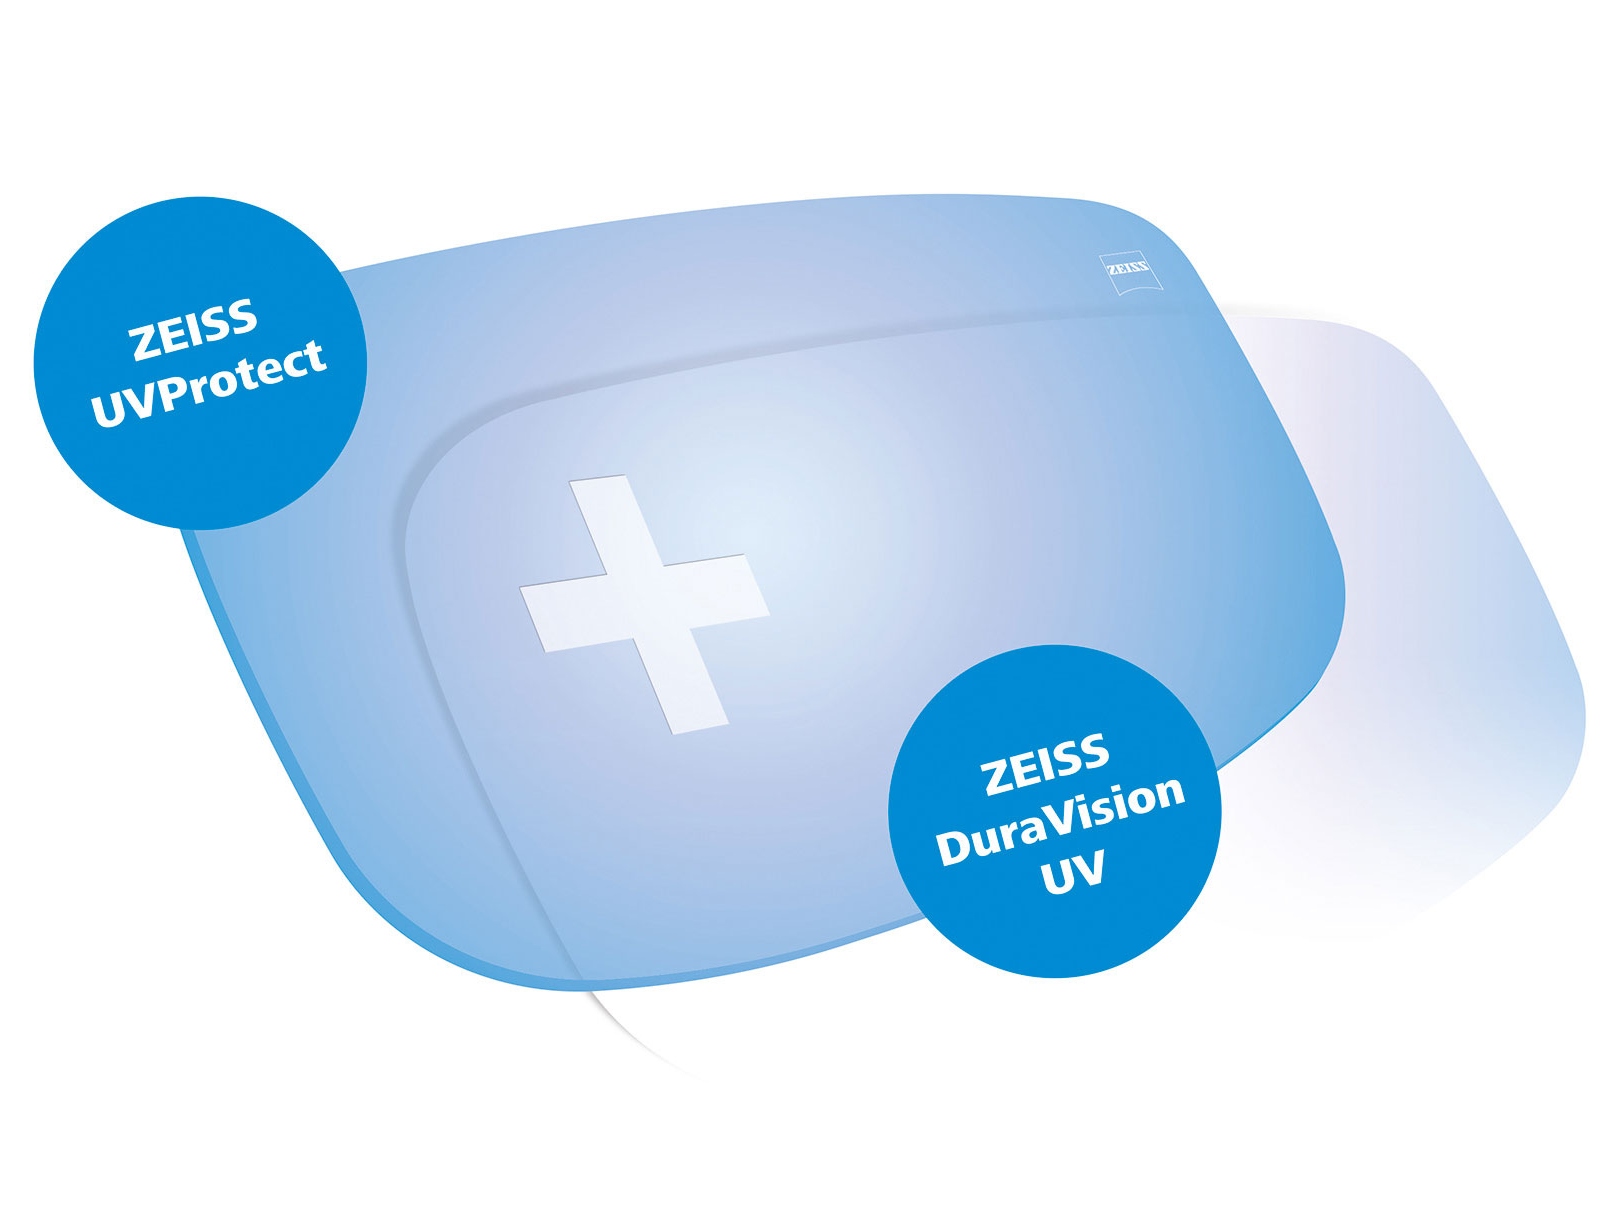 Všechny brýlové čočky ZEISS jsou nyní standardně dodávány s plnou UV ochranou ze všech stran. Grafika zobrazuje dvě řešení.